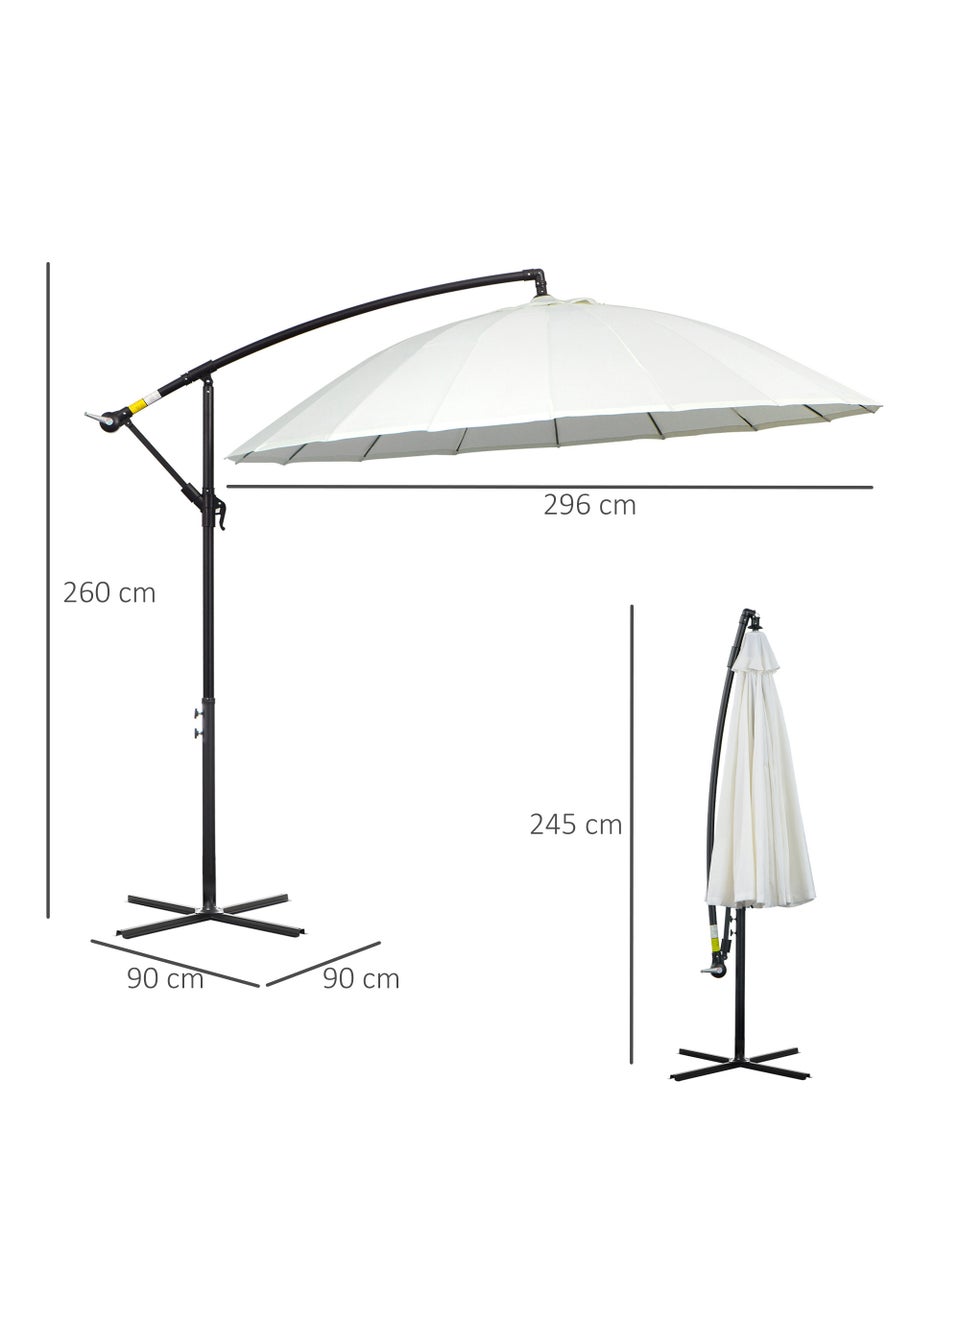 Outsunny White Cantilever Sun Umbrella (245cm x 296cm x 296cm)